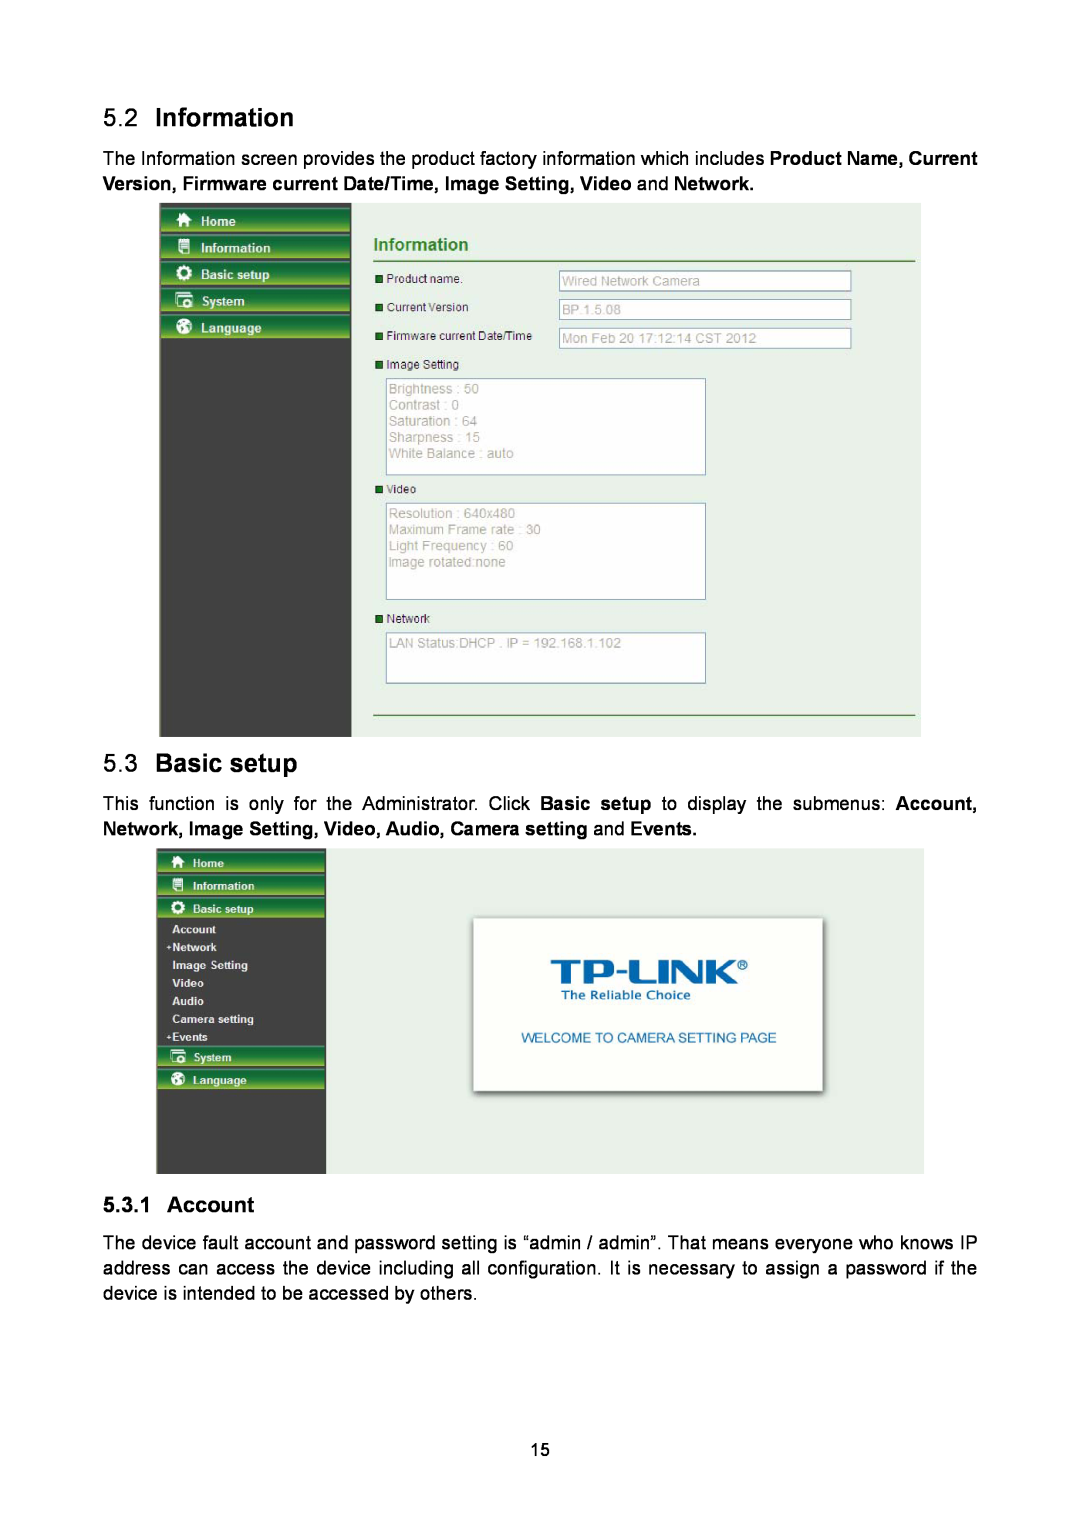 TP-Link TL-SC2020 manual Information, Basic setup, Account 